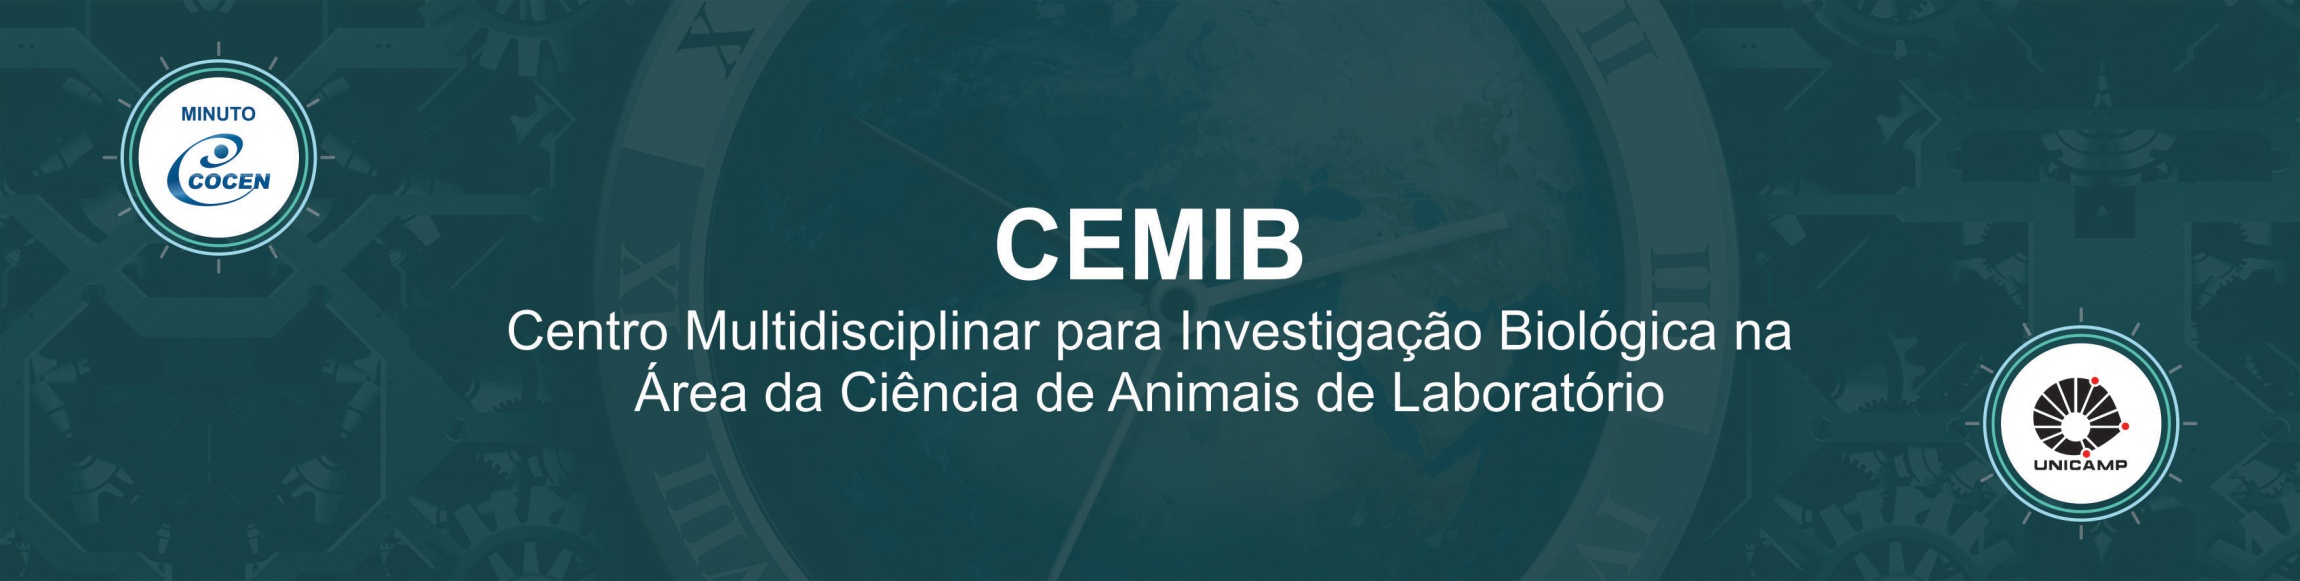 Imagem: Minuto Cocen: CEMIB - Centro Multidisciplinar de Investigação Biológica na Área da Ciência de Animais de Laboratório